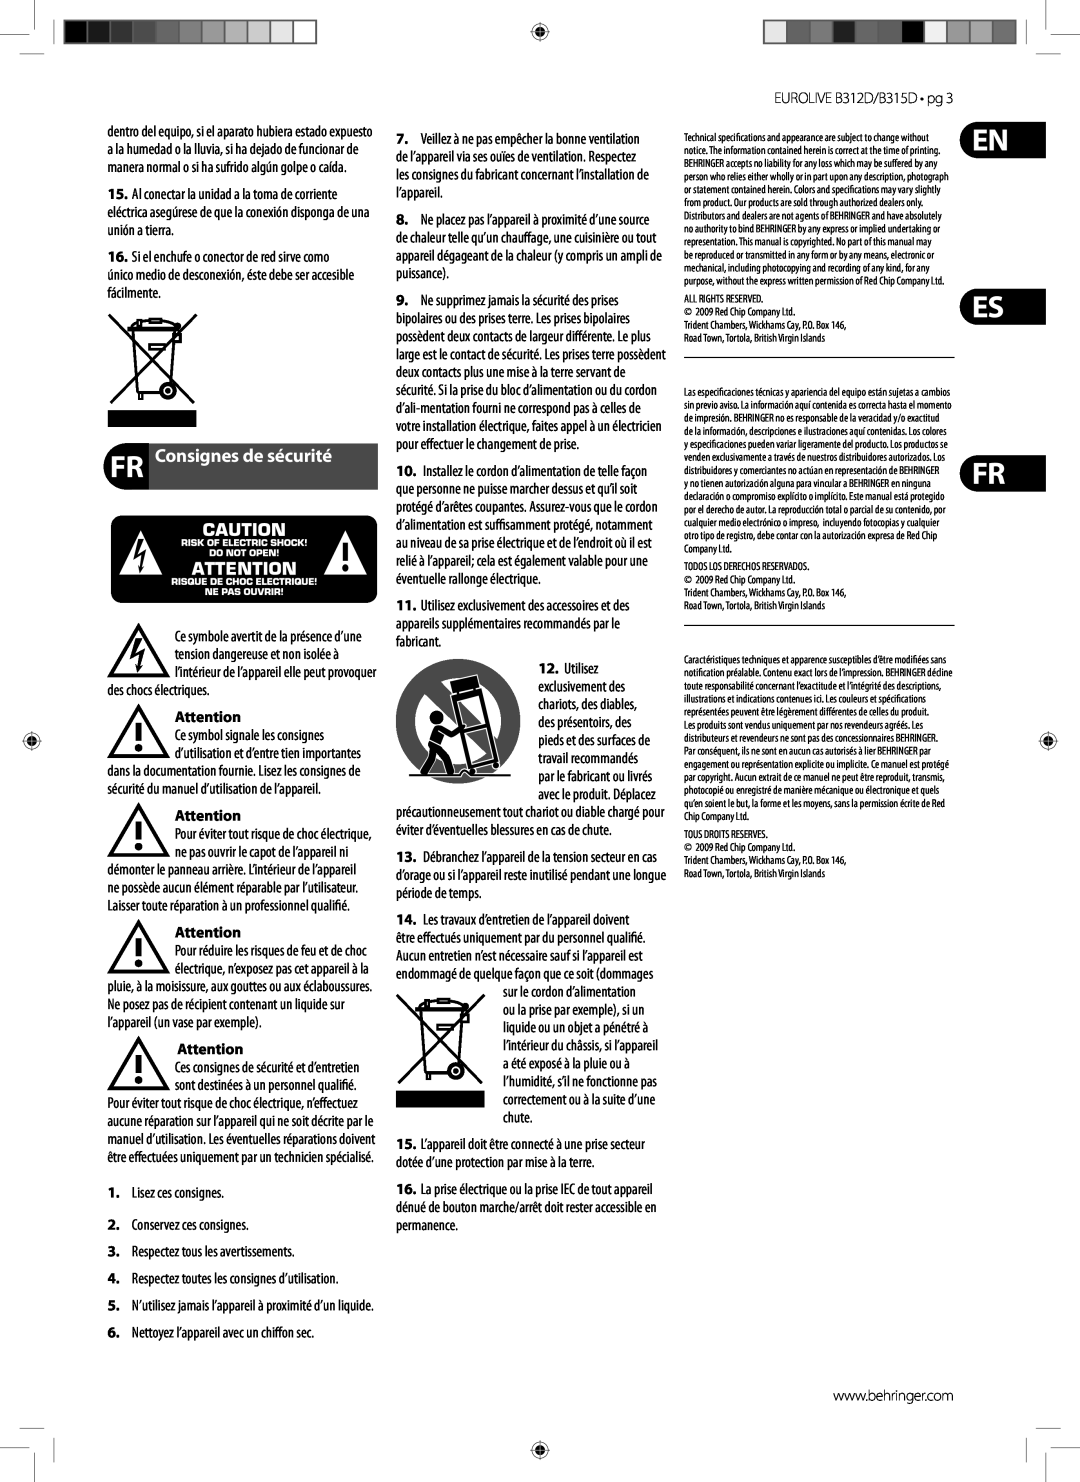 Behringer B315D FR Consignes de sécurité, En Es Fr, des chocs électriques, Lisez ces consignes 2.Conservez ces consignes 